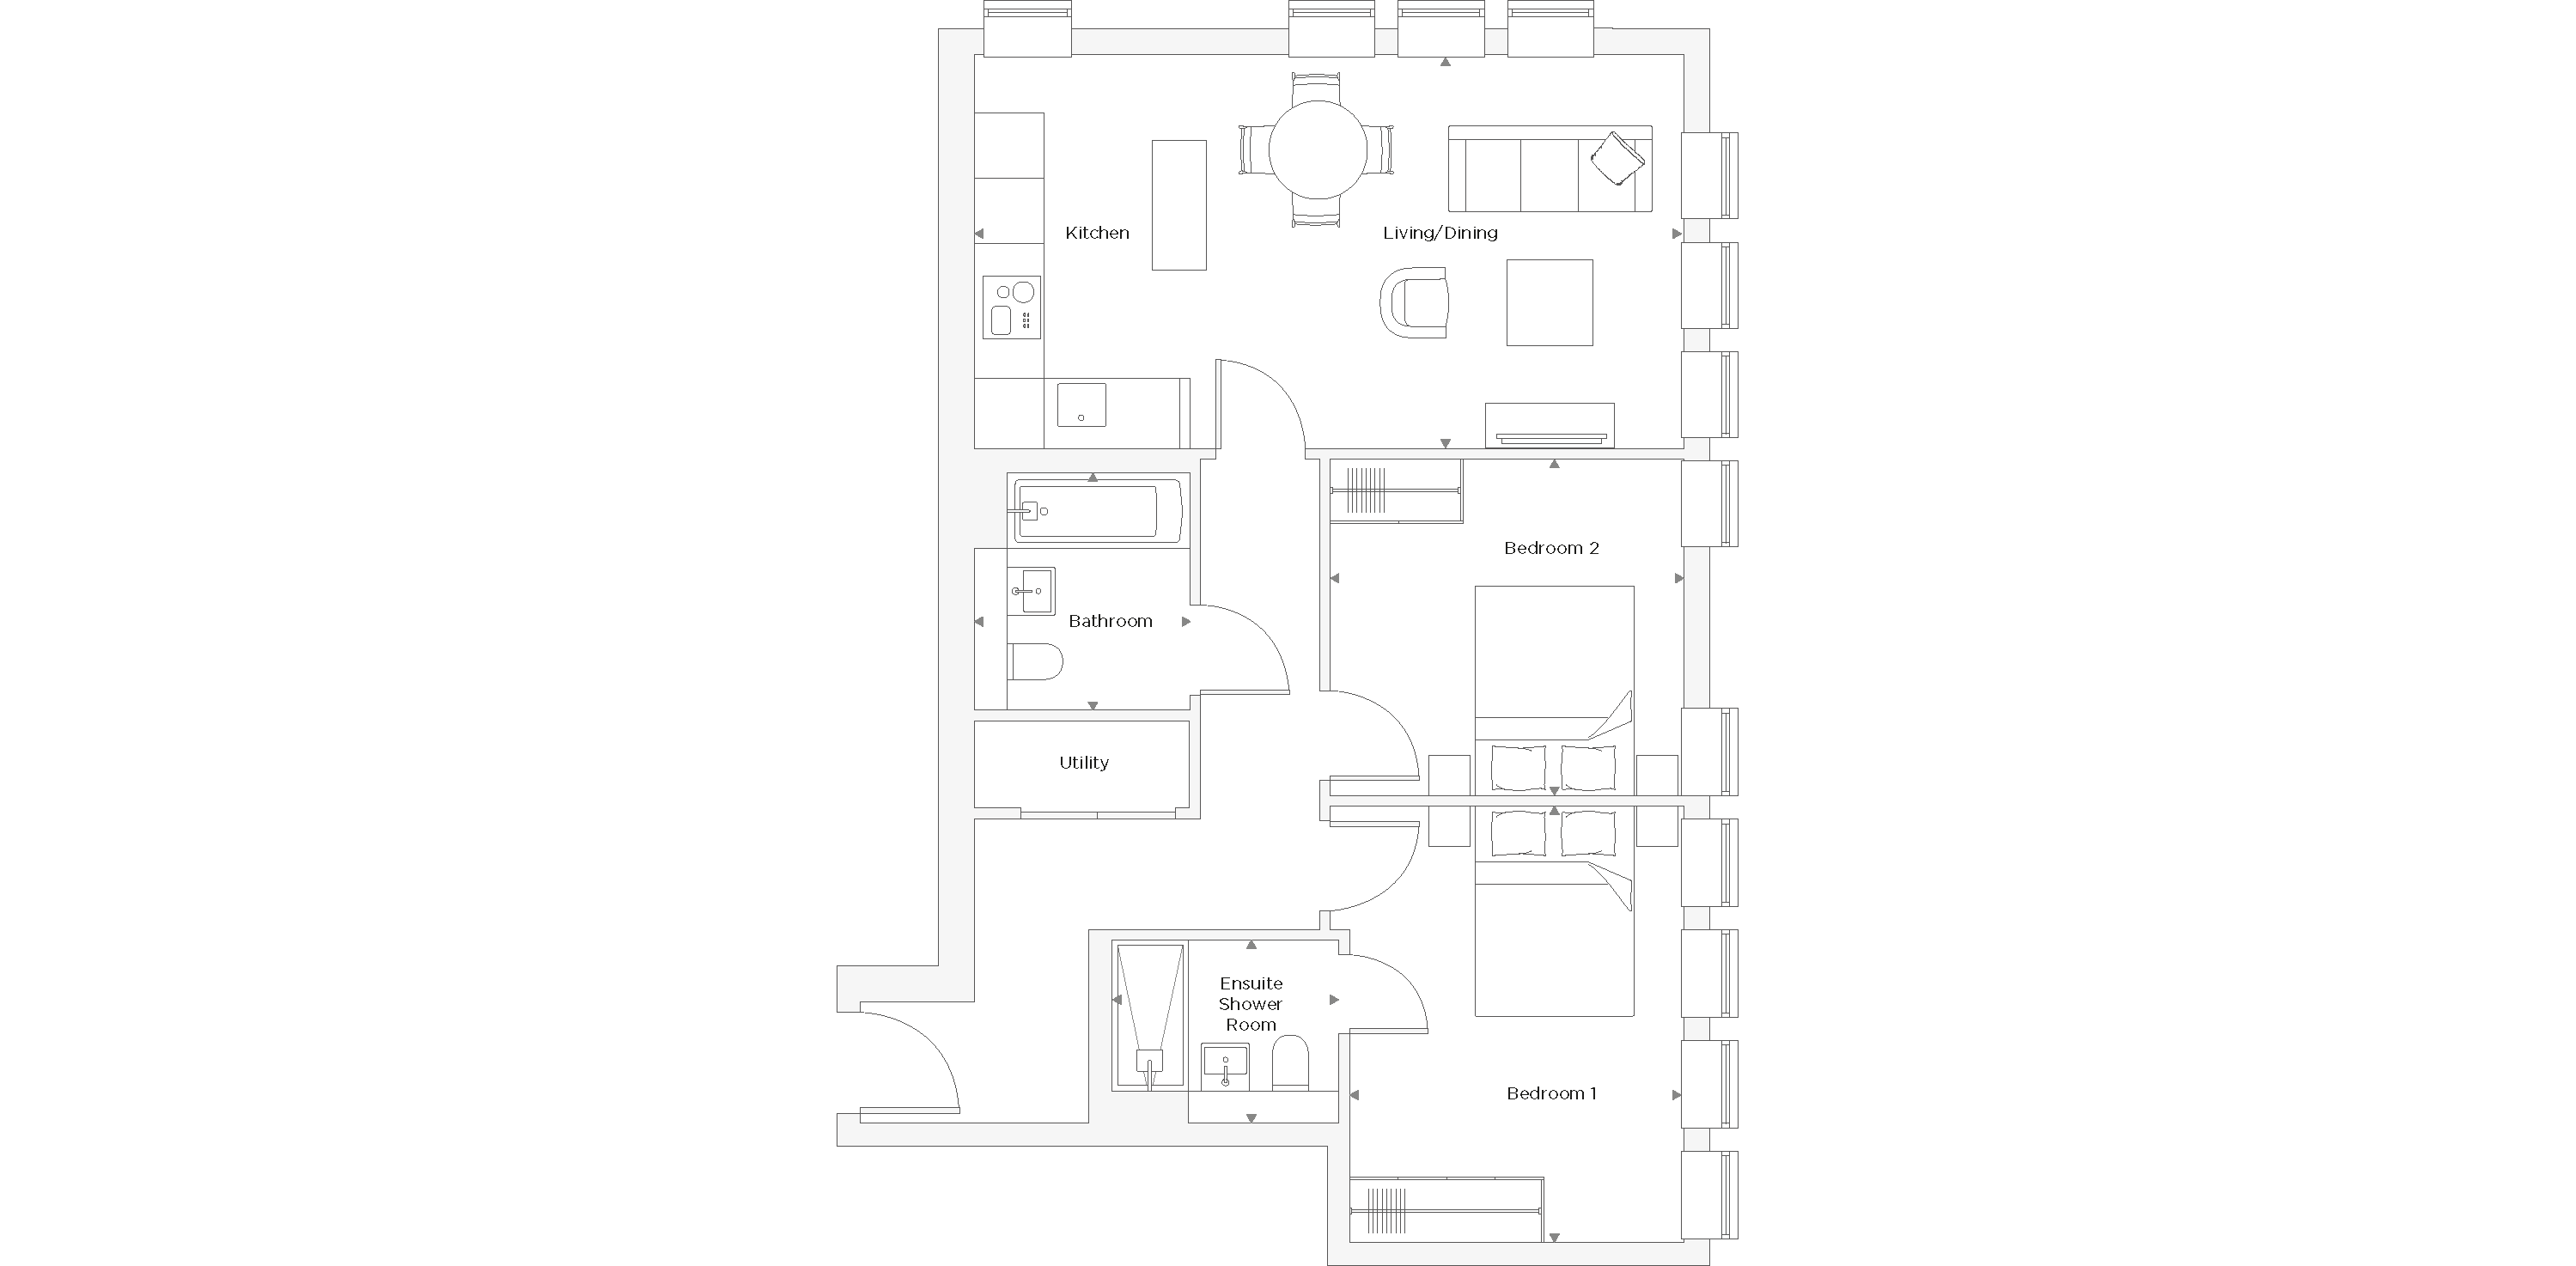 Two Bedroom Apartment C.0.02 Floor Plan